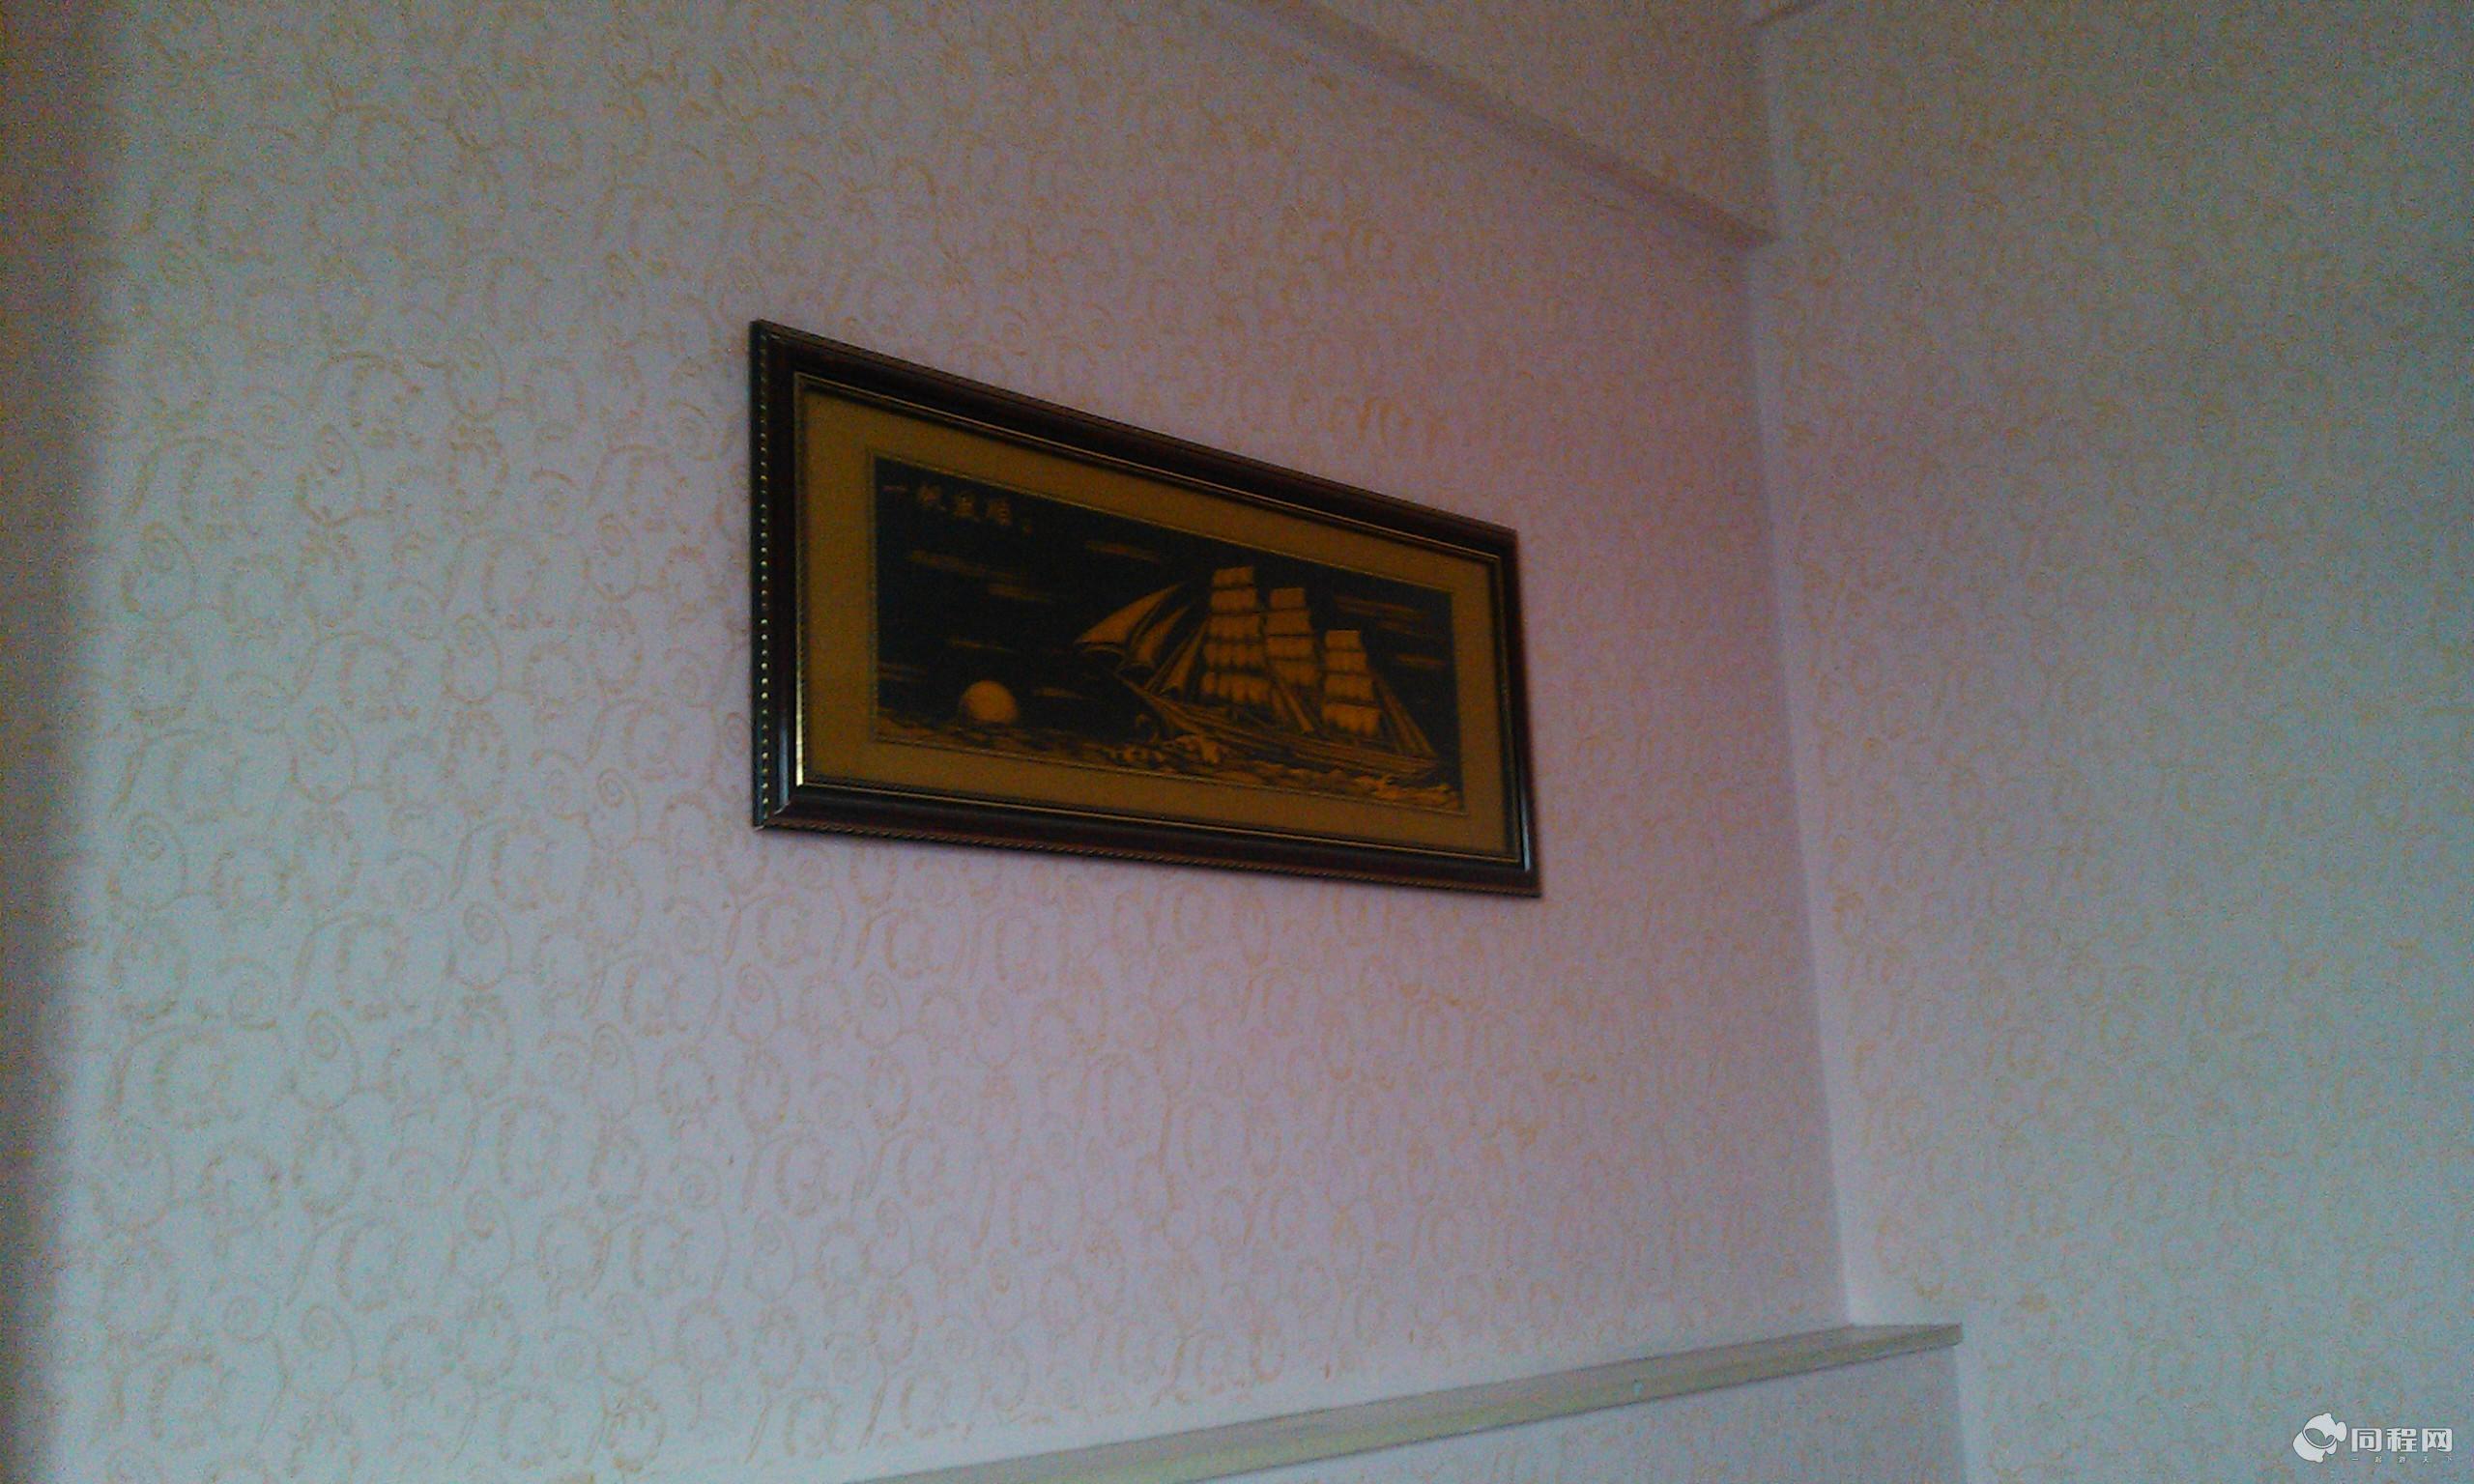 广州良典酒店图片客房墙壁装饰[由13810aygzfi提供]